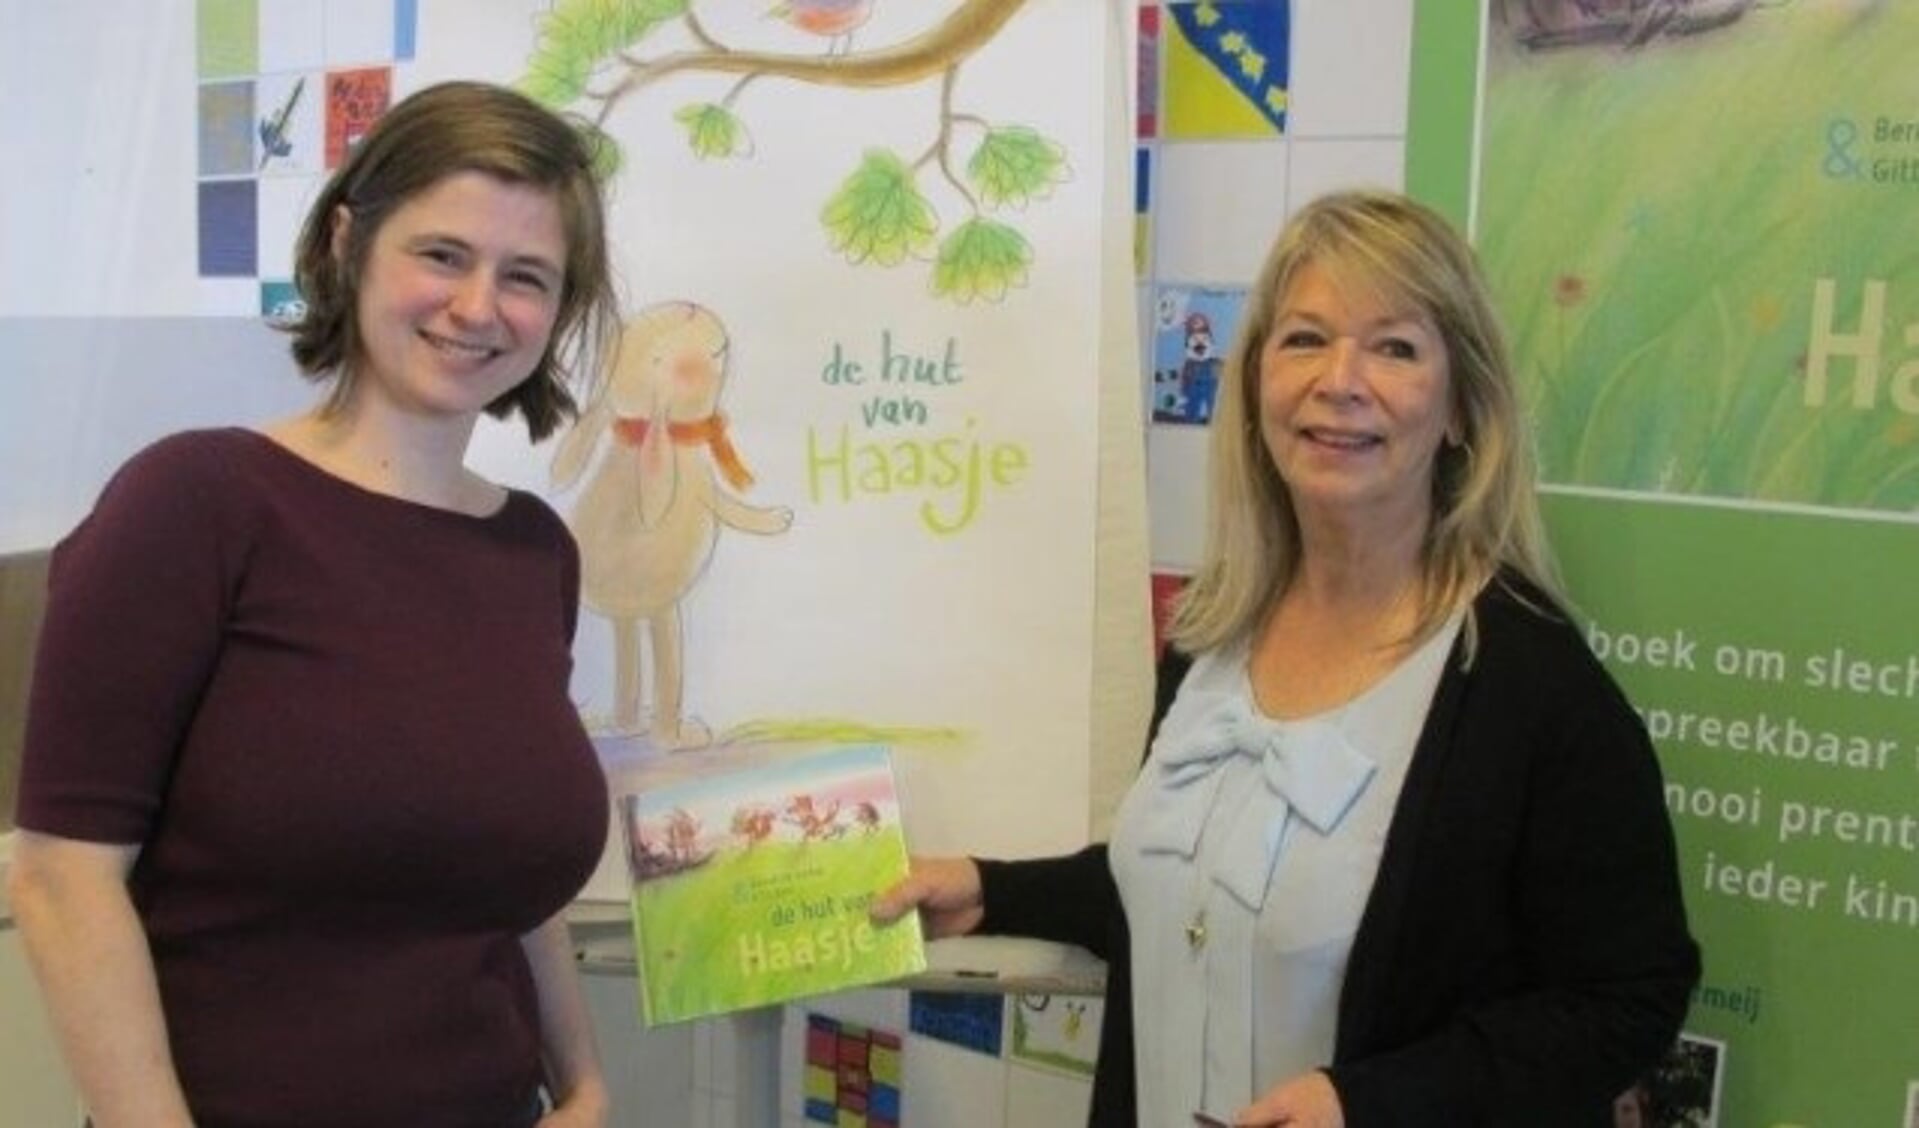 Bernadette Vermeij (links) uit Oudewater maakte samen met Gitte Spee een speciaal prentenboek over slechthorendheid. (Eigen foto)